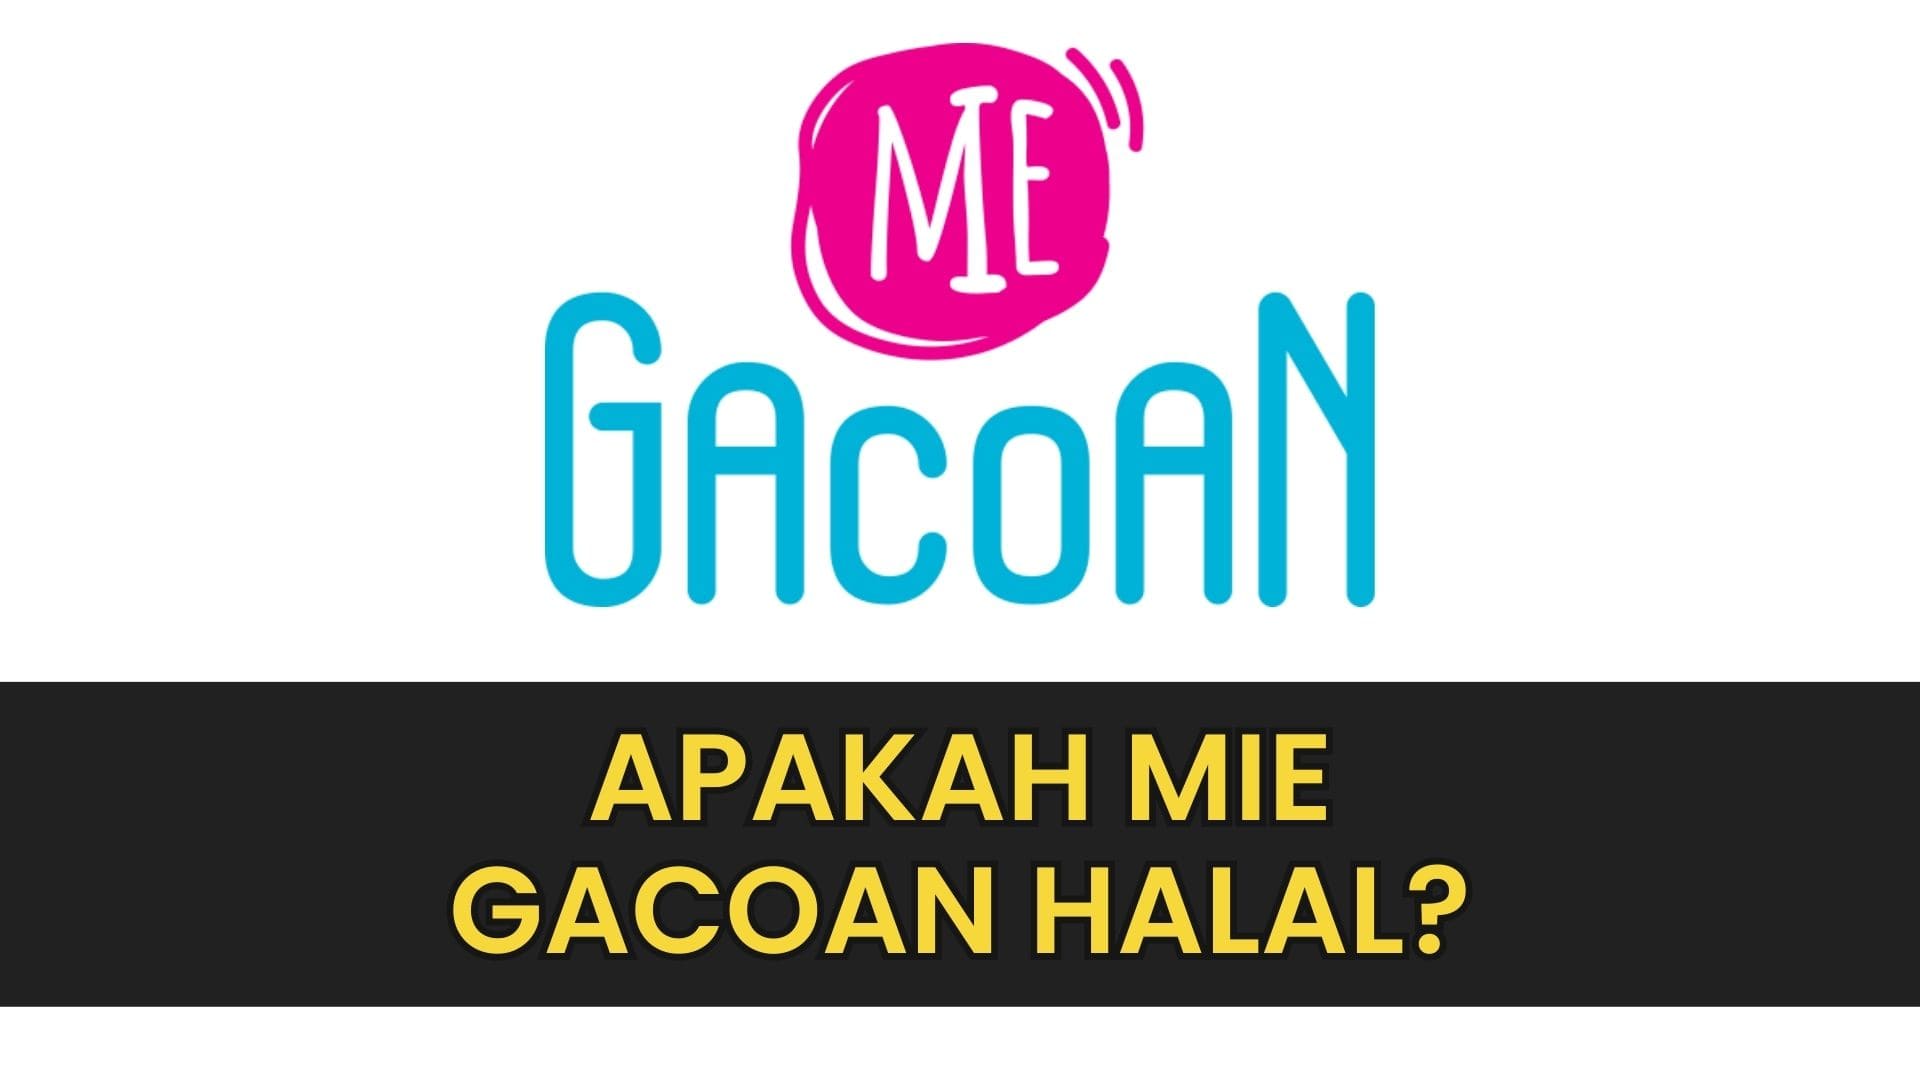 Meskipun begitu, banyak konsumen yang memiliki keraguan tentang kehalalan mie Gacoan. Maka, pertanyaan yang sering dilontarkan adalah, apakah mie Gacoan halal